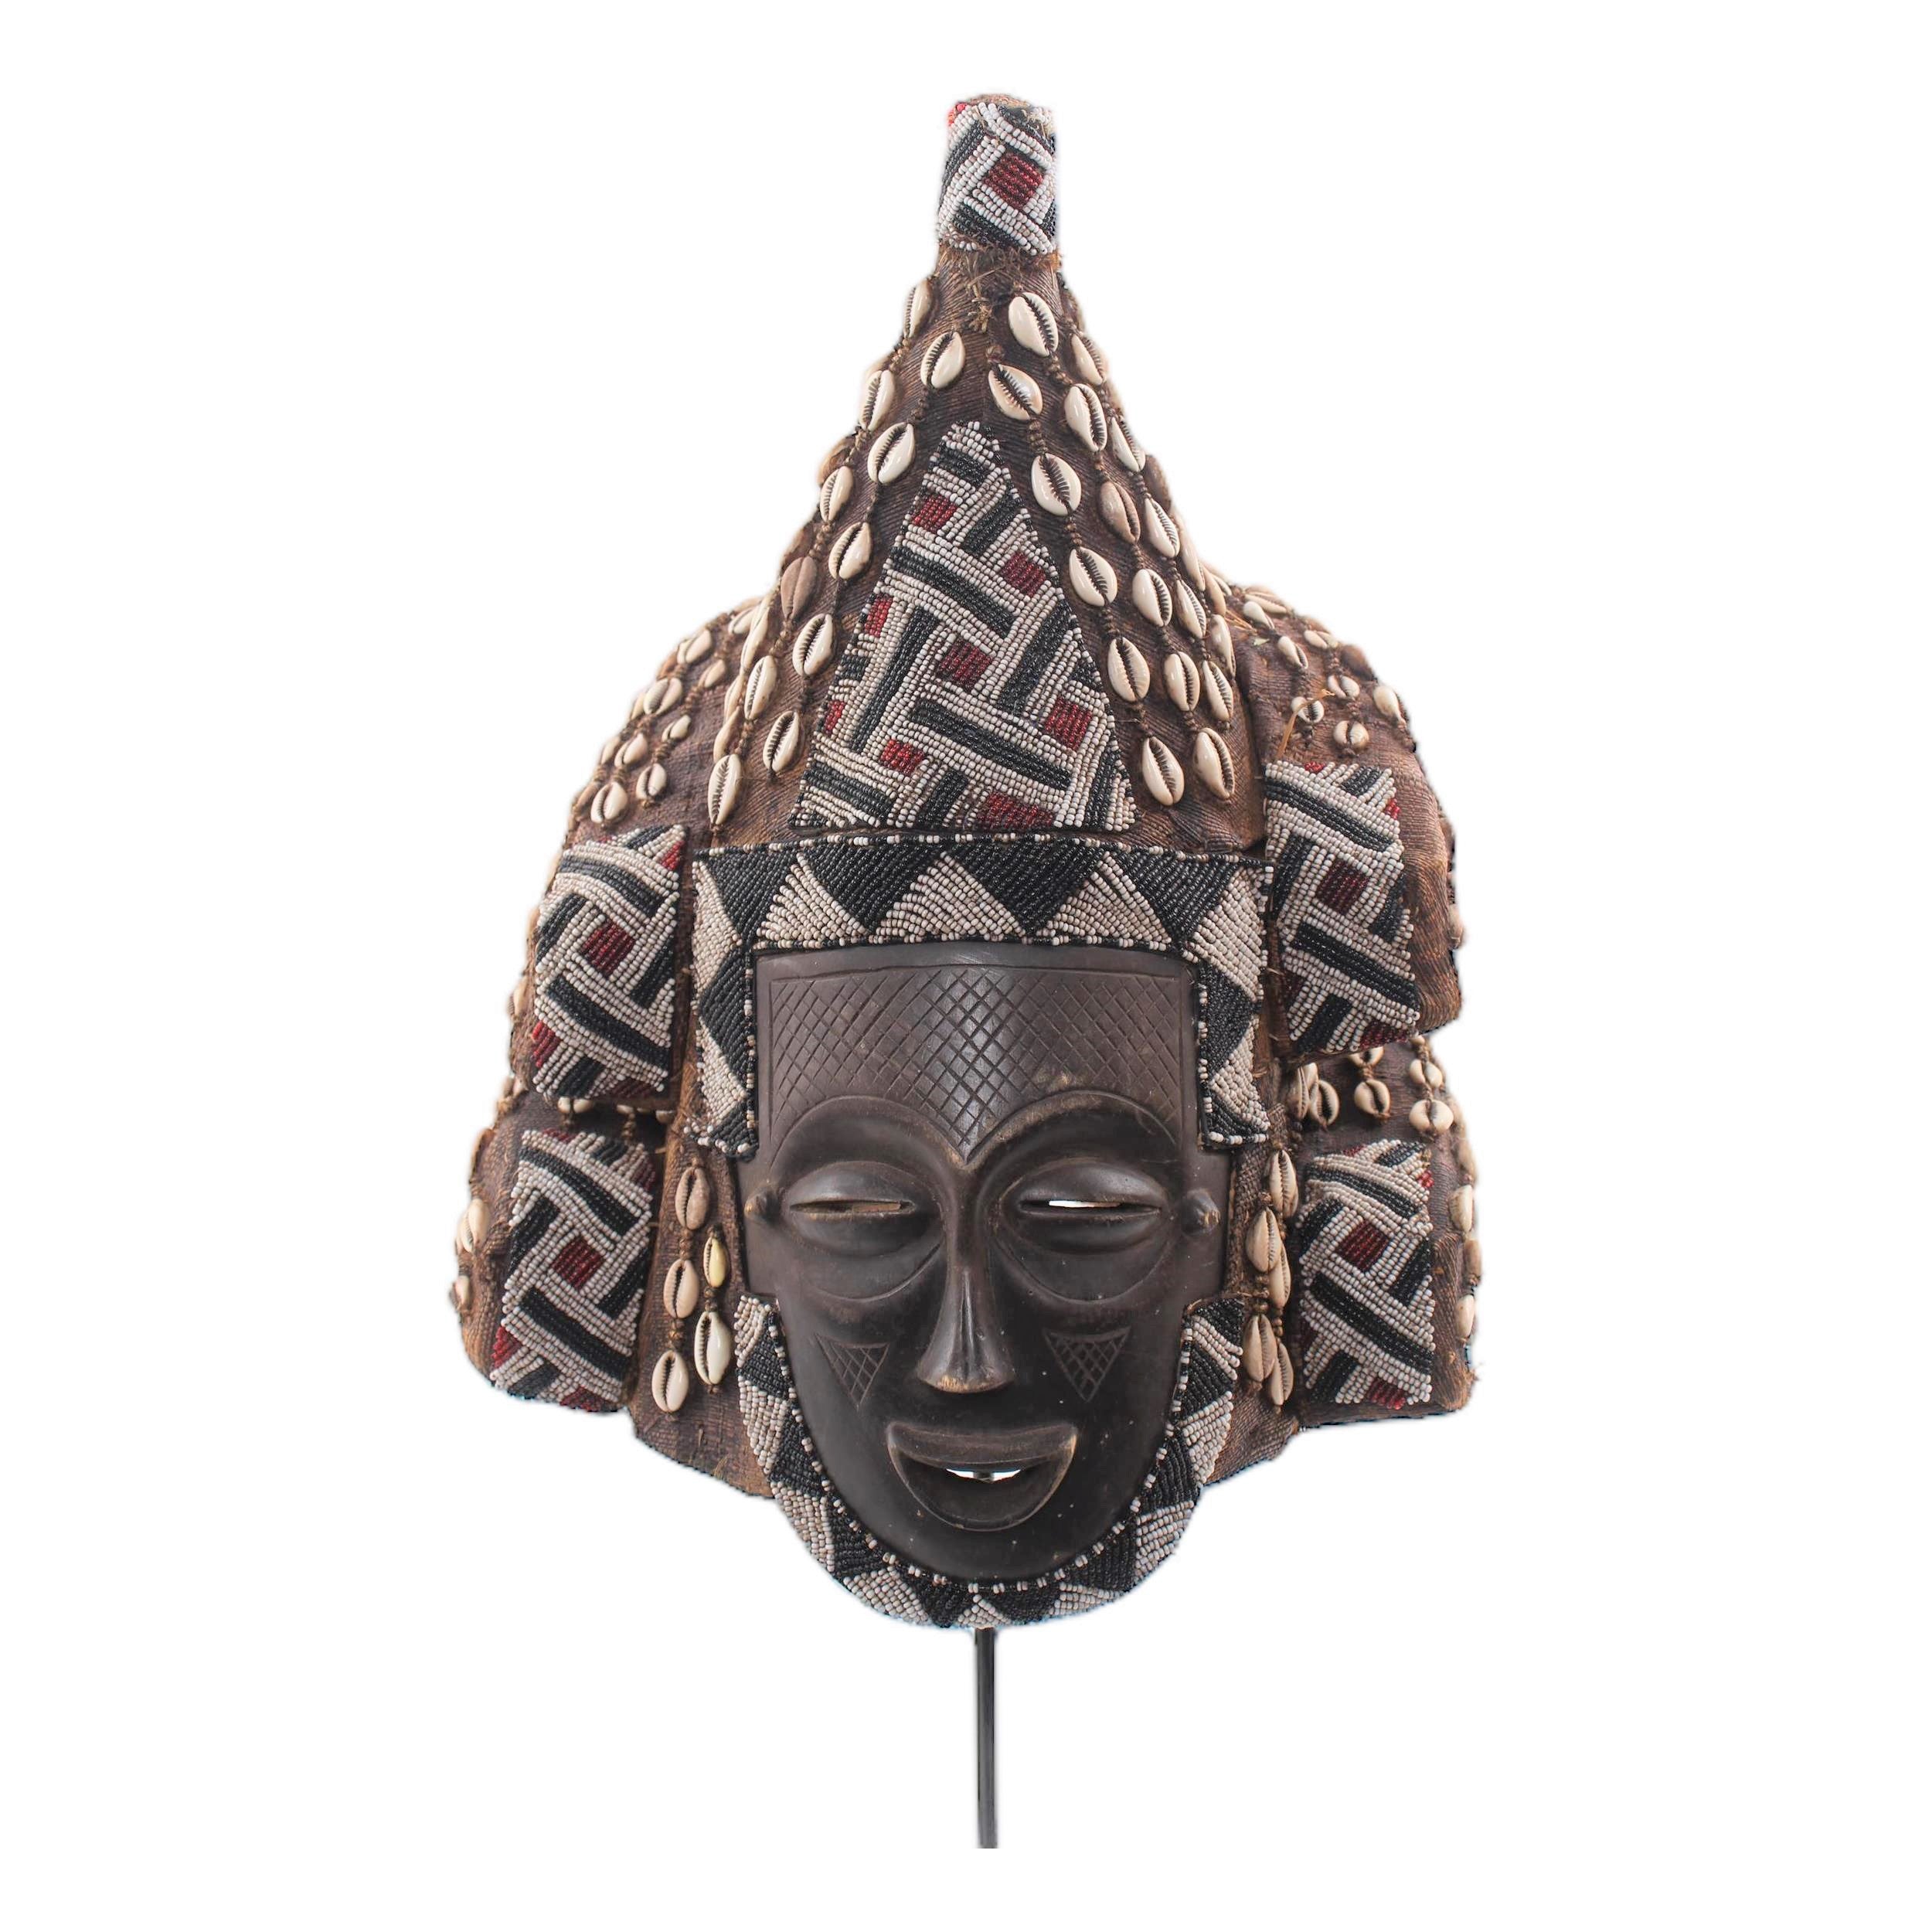 Kuba/Bakuba Tribe Mask ~30.7" Tall - Mask